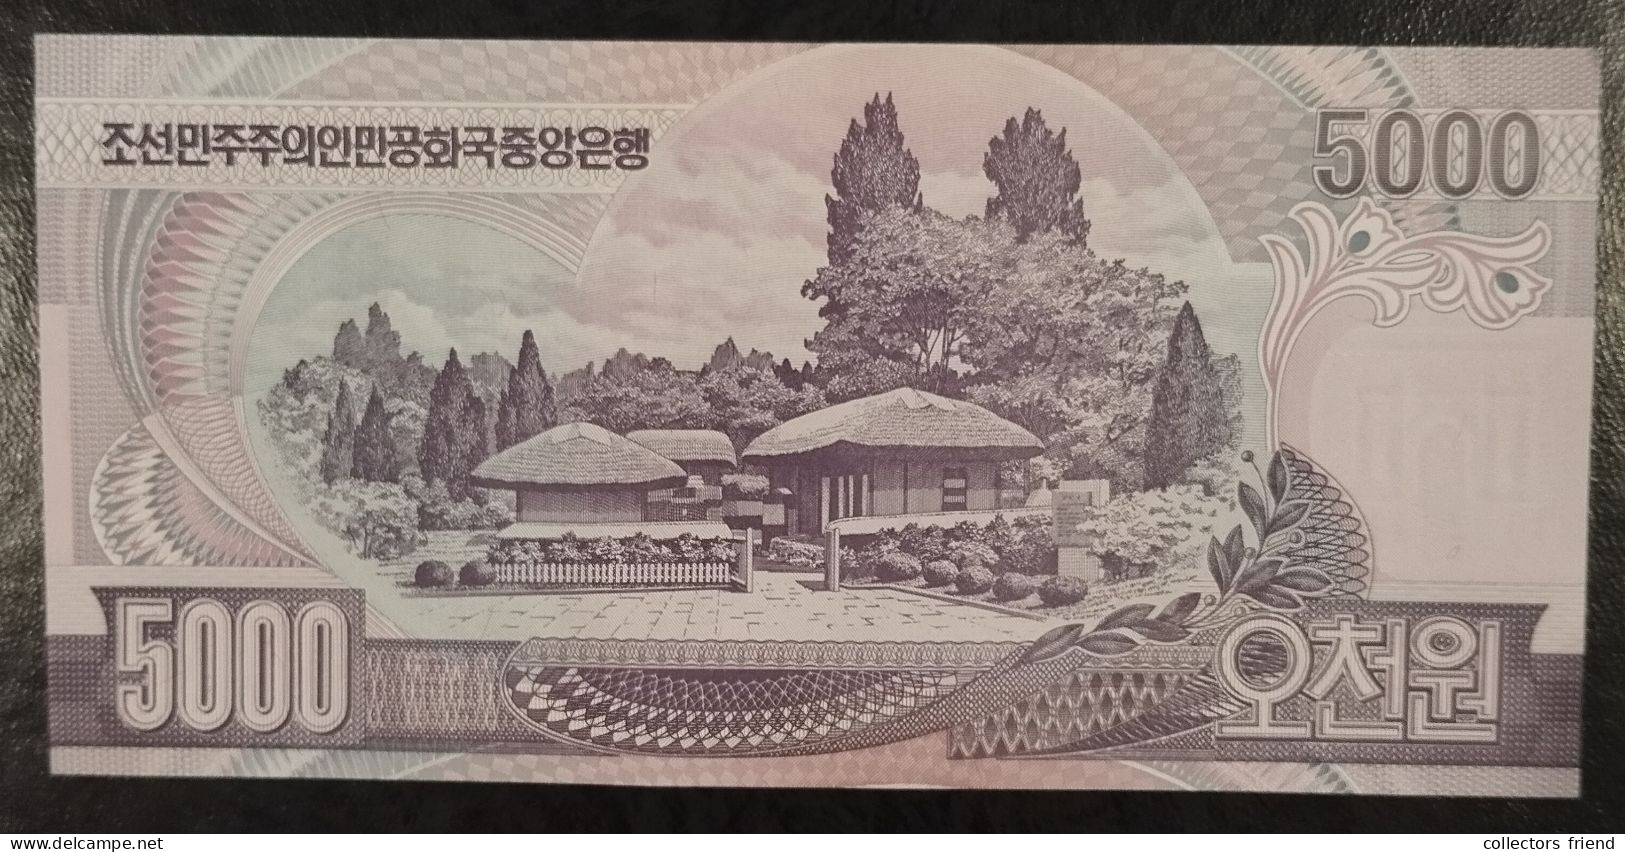 North Korea Nordkorea - 2006 - 5000 Won - P46 (7 Digits) - UNC - Korea, North